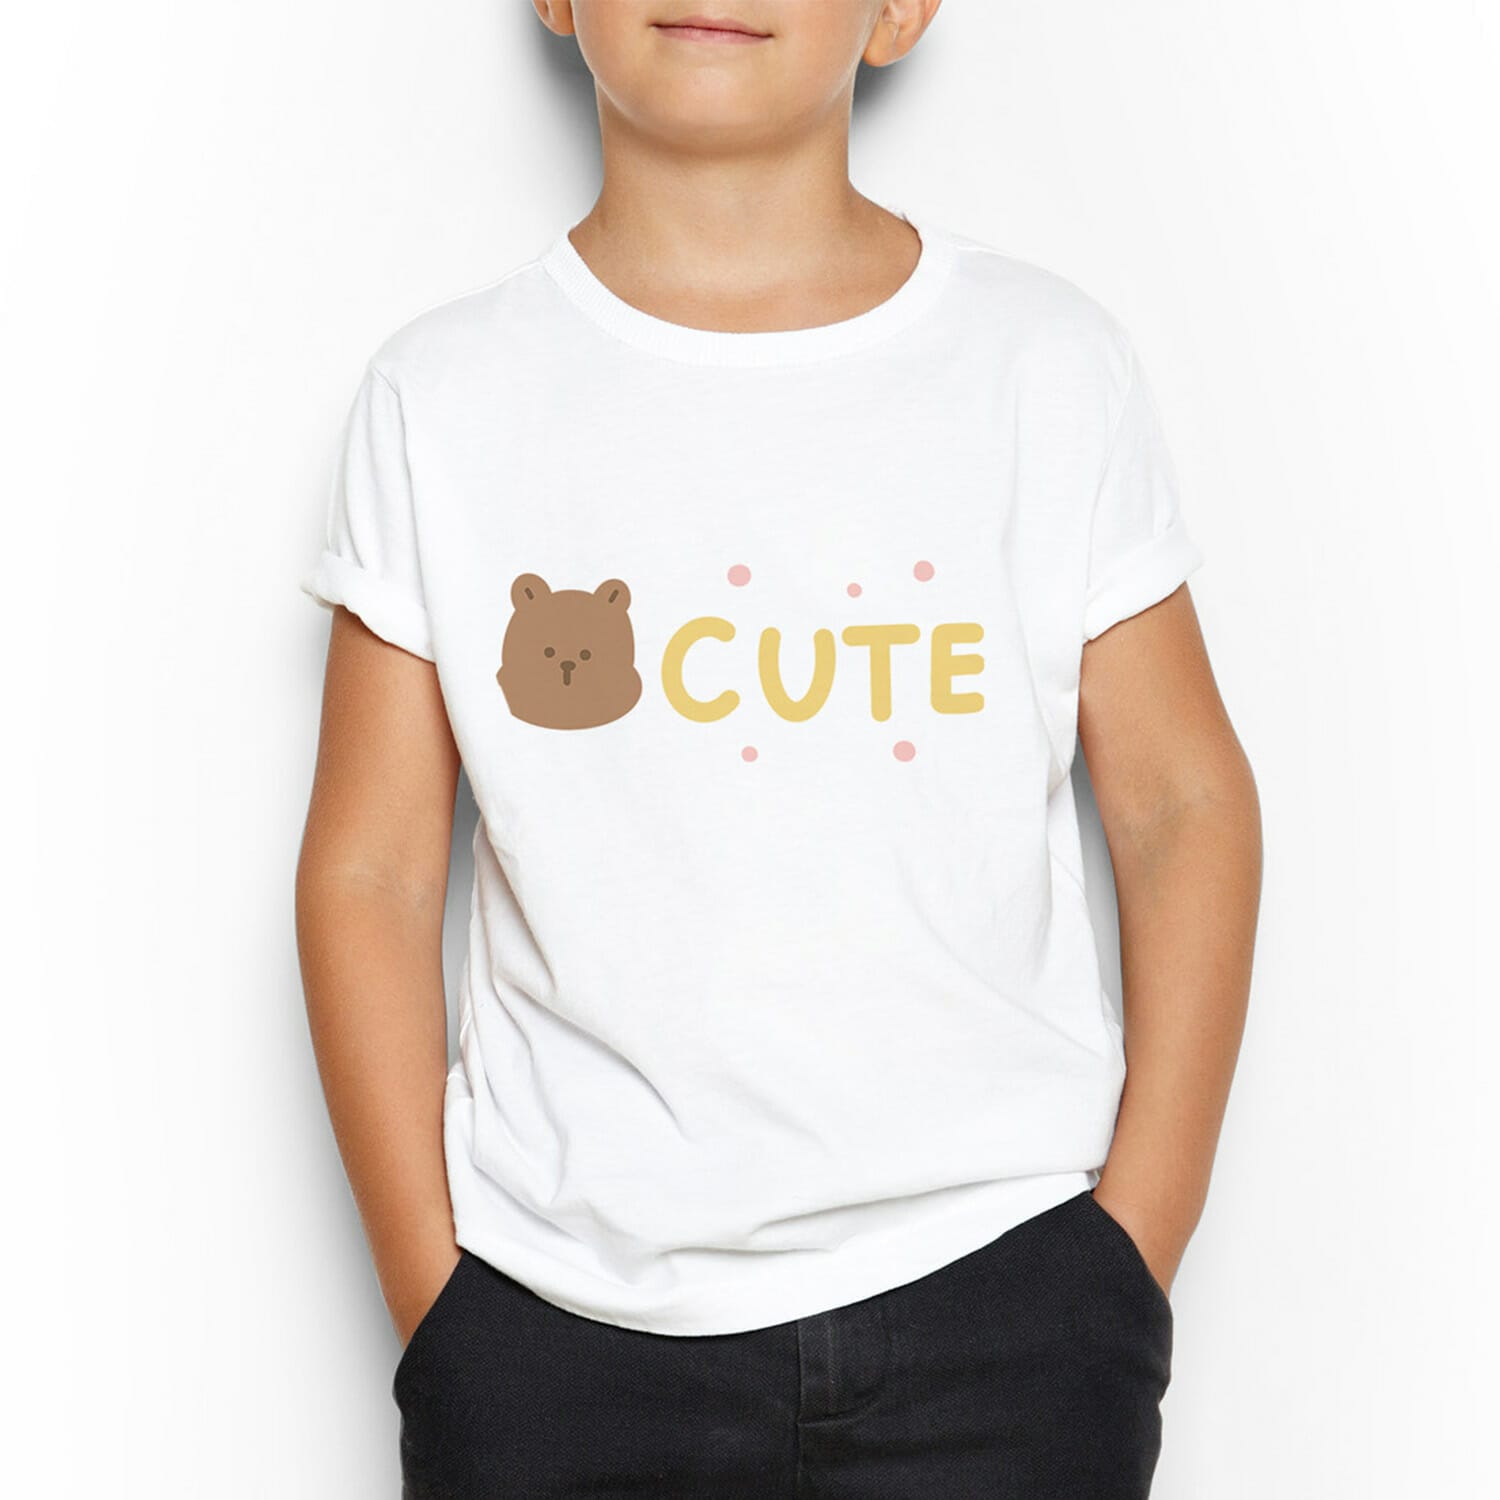 Cute Bear T-shirt Design For Kids